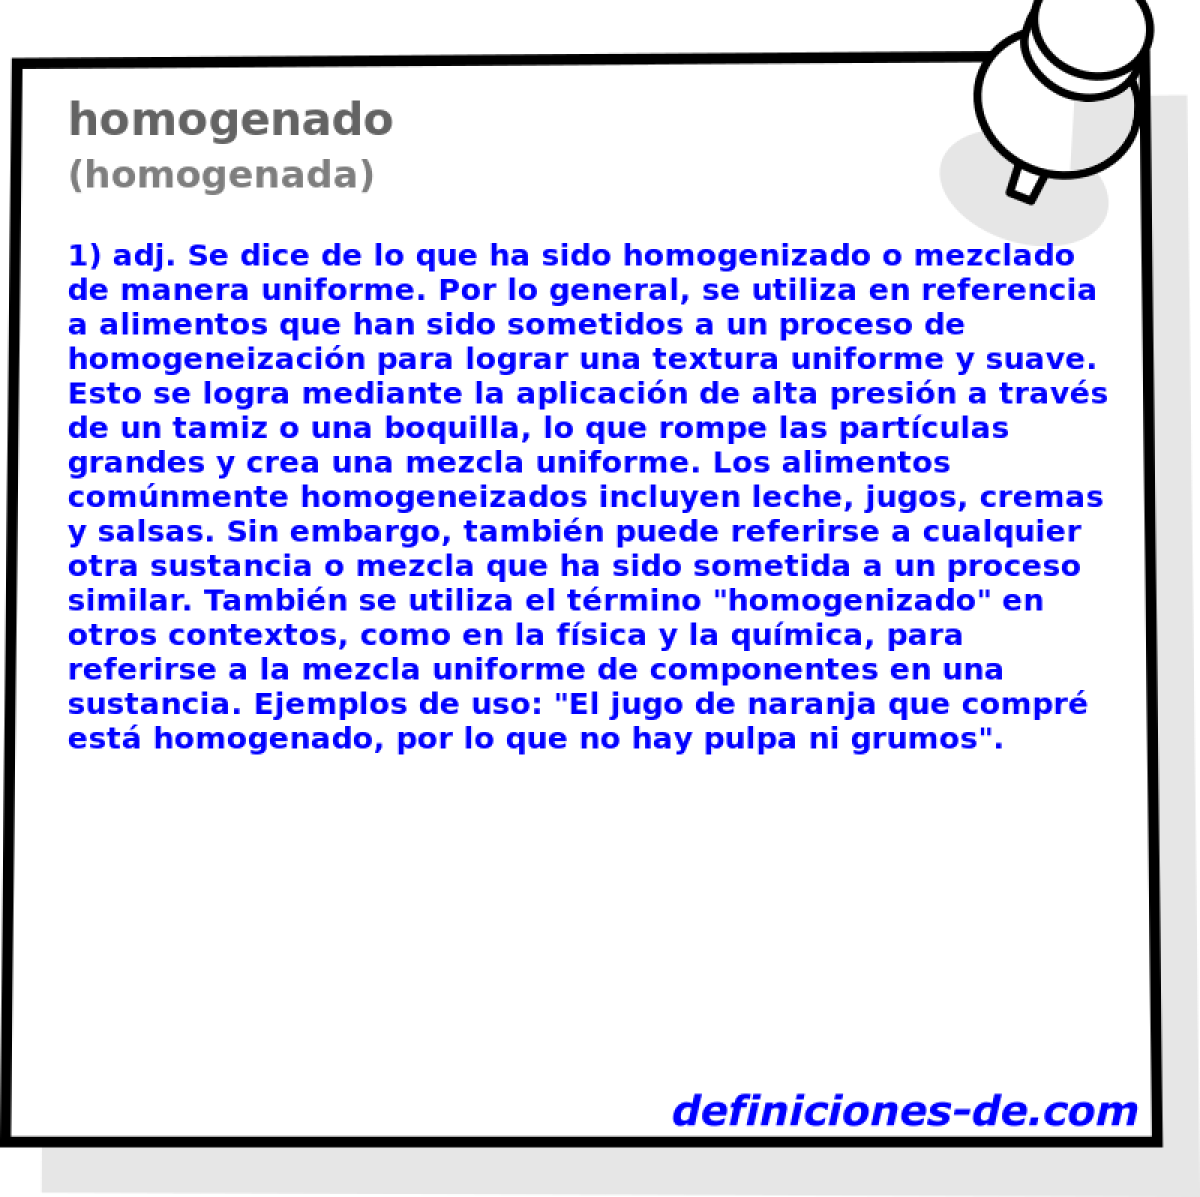 homogenado (homogenada)